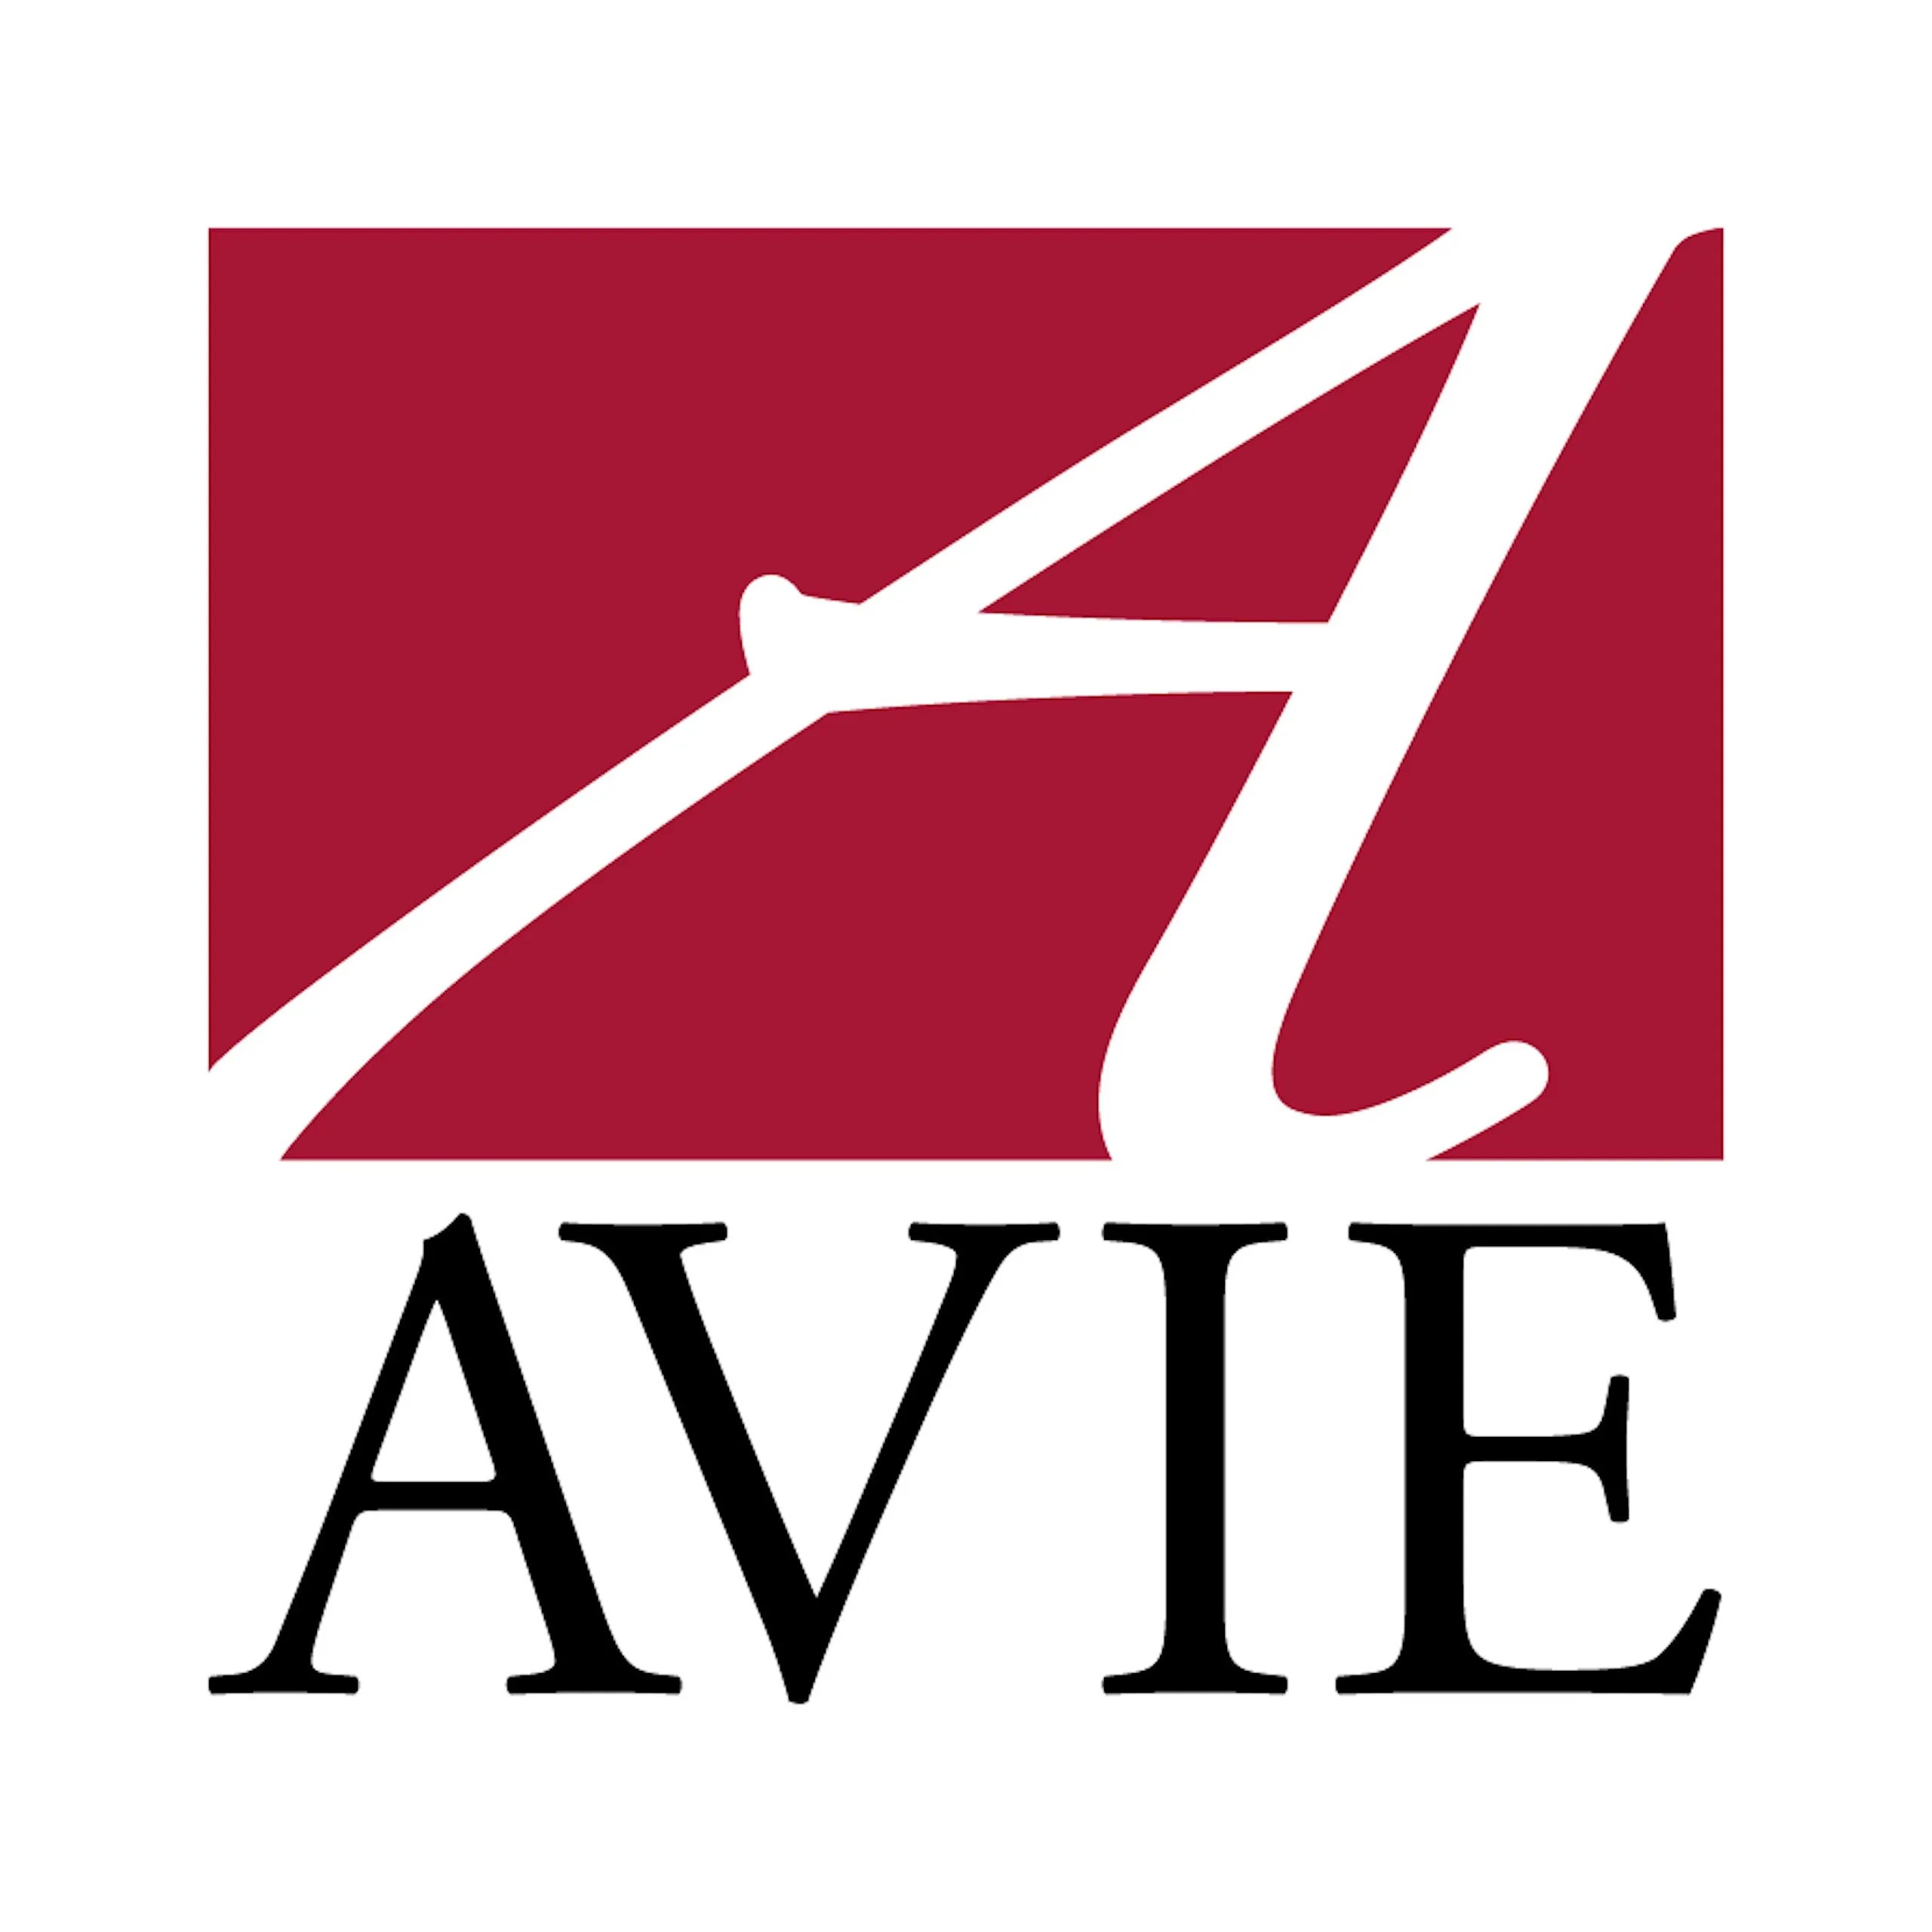 Avie Logo Large.jpg